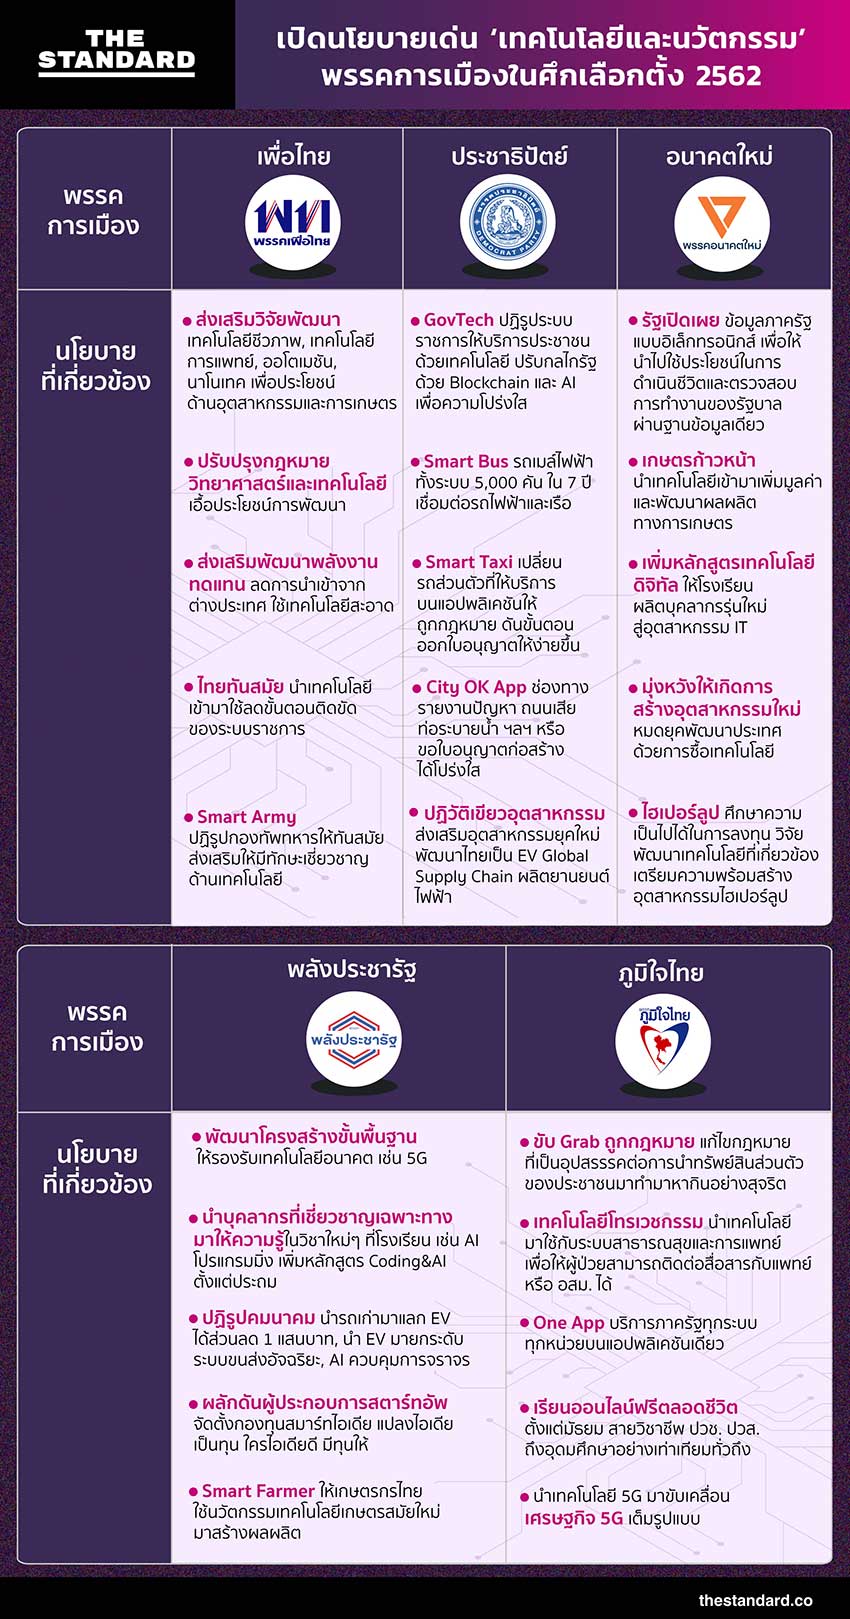 thailandelection2562